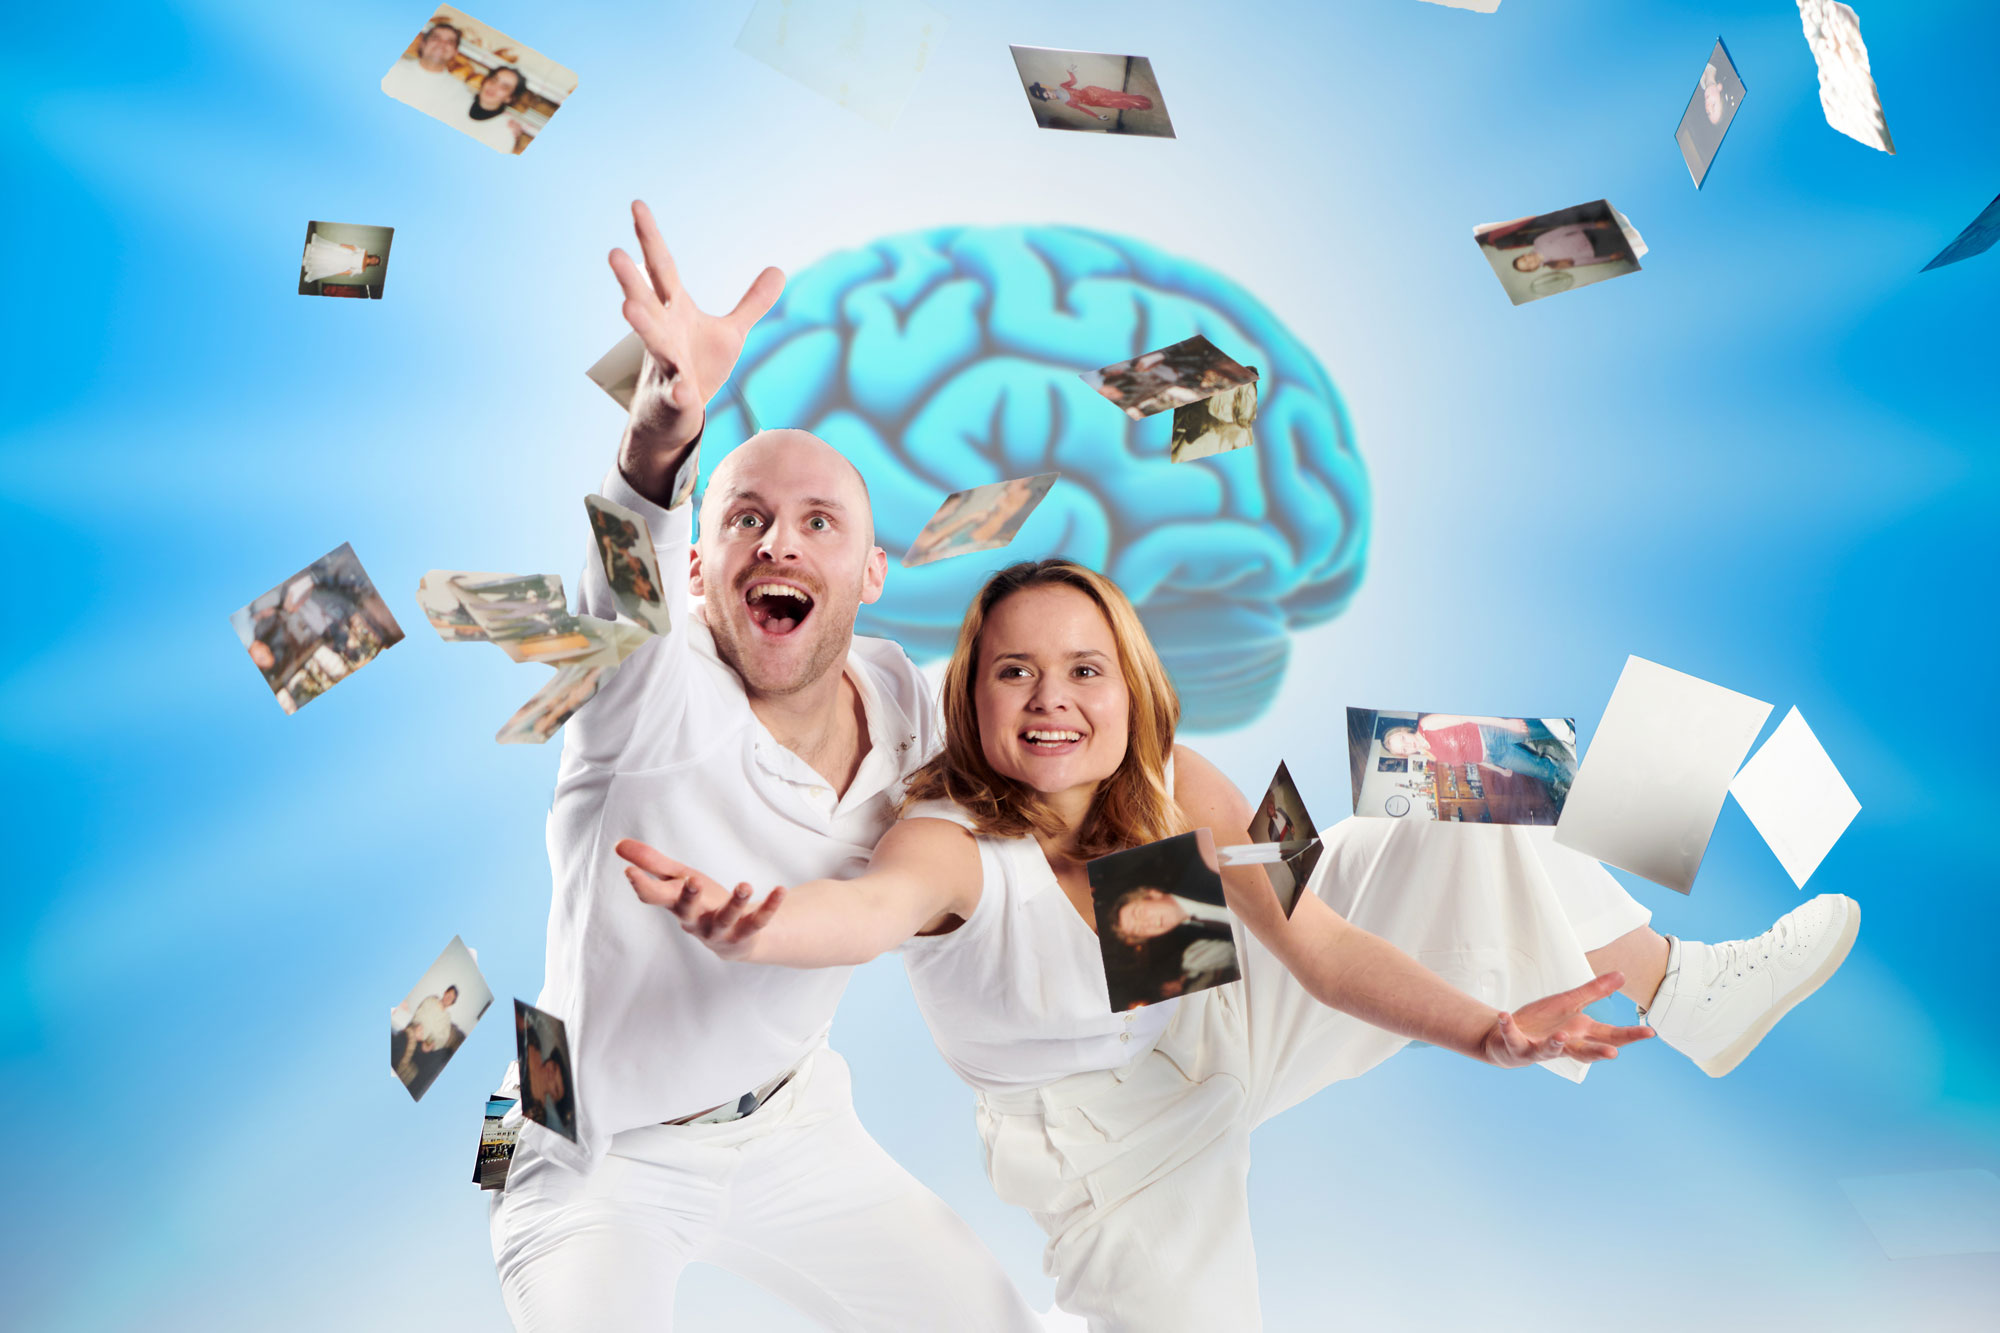 Ein Mann und eine Frau umgeben von um sie fliegenden Fotos, im Hintergrund eine Illustration eines Gehirns